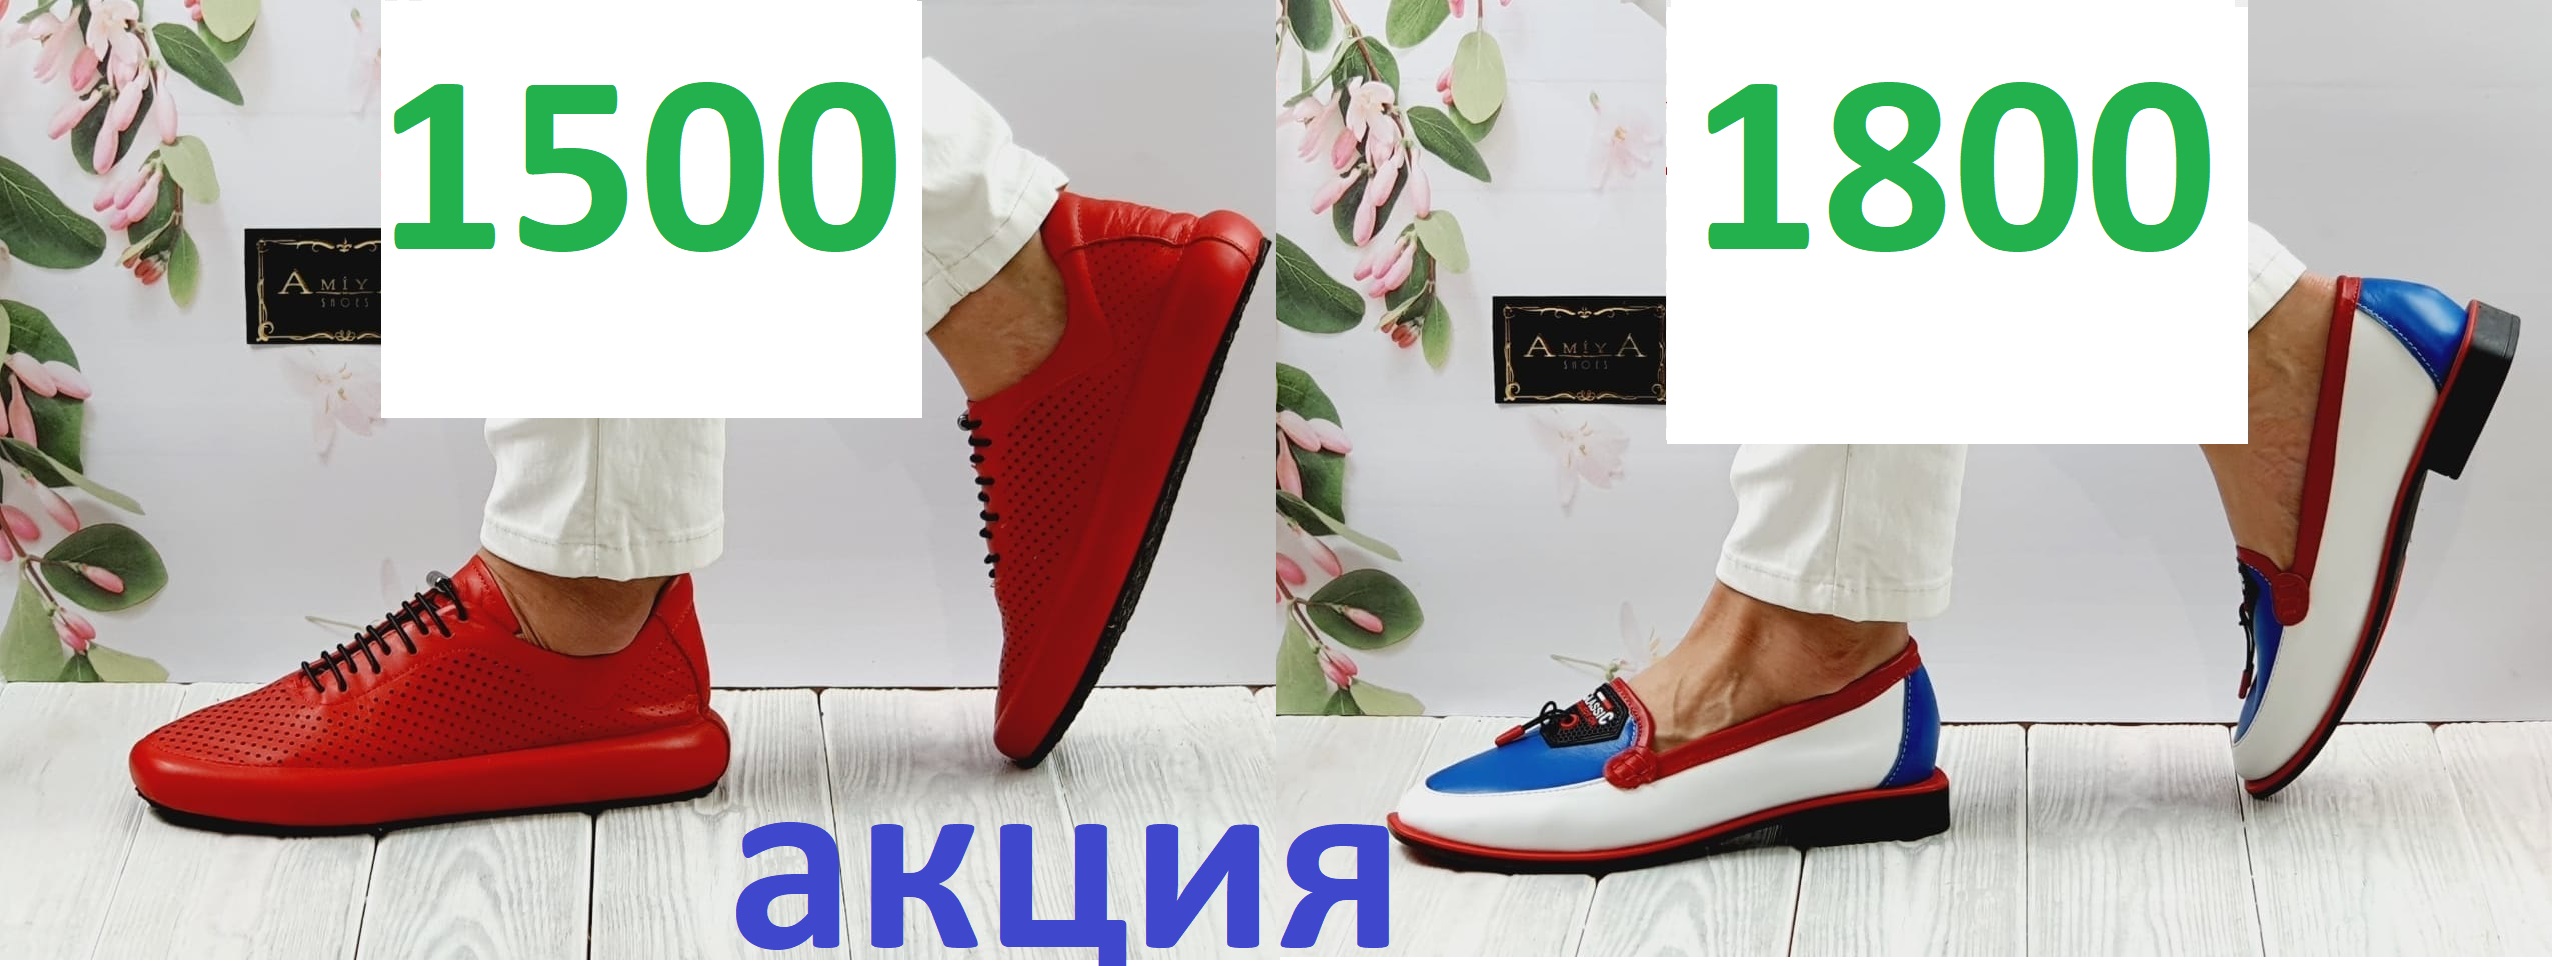 Всех приглашаю за классной Турецкой обувью марки AMIYA! Акция от 1500 ру за обувь из натуральной кожи!!! И не говорите потом, что не видели;)))